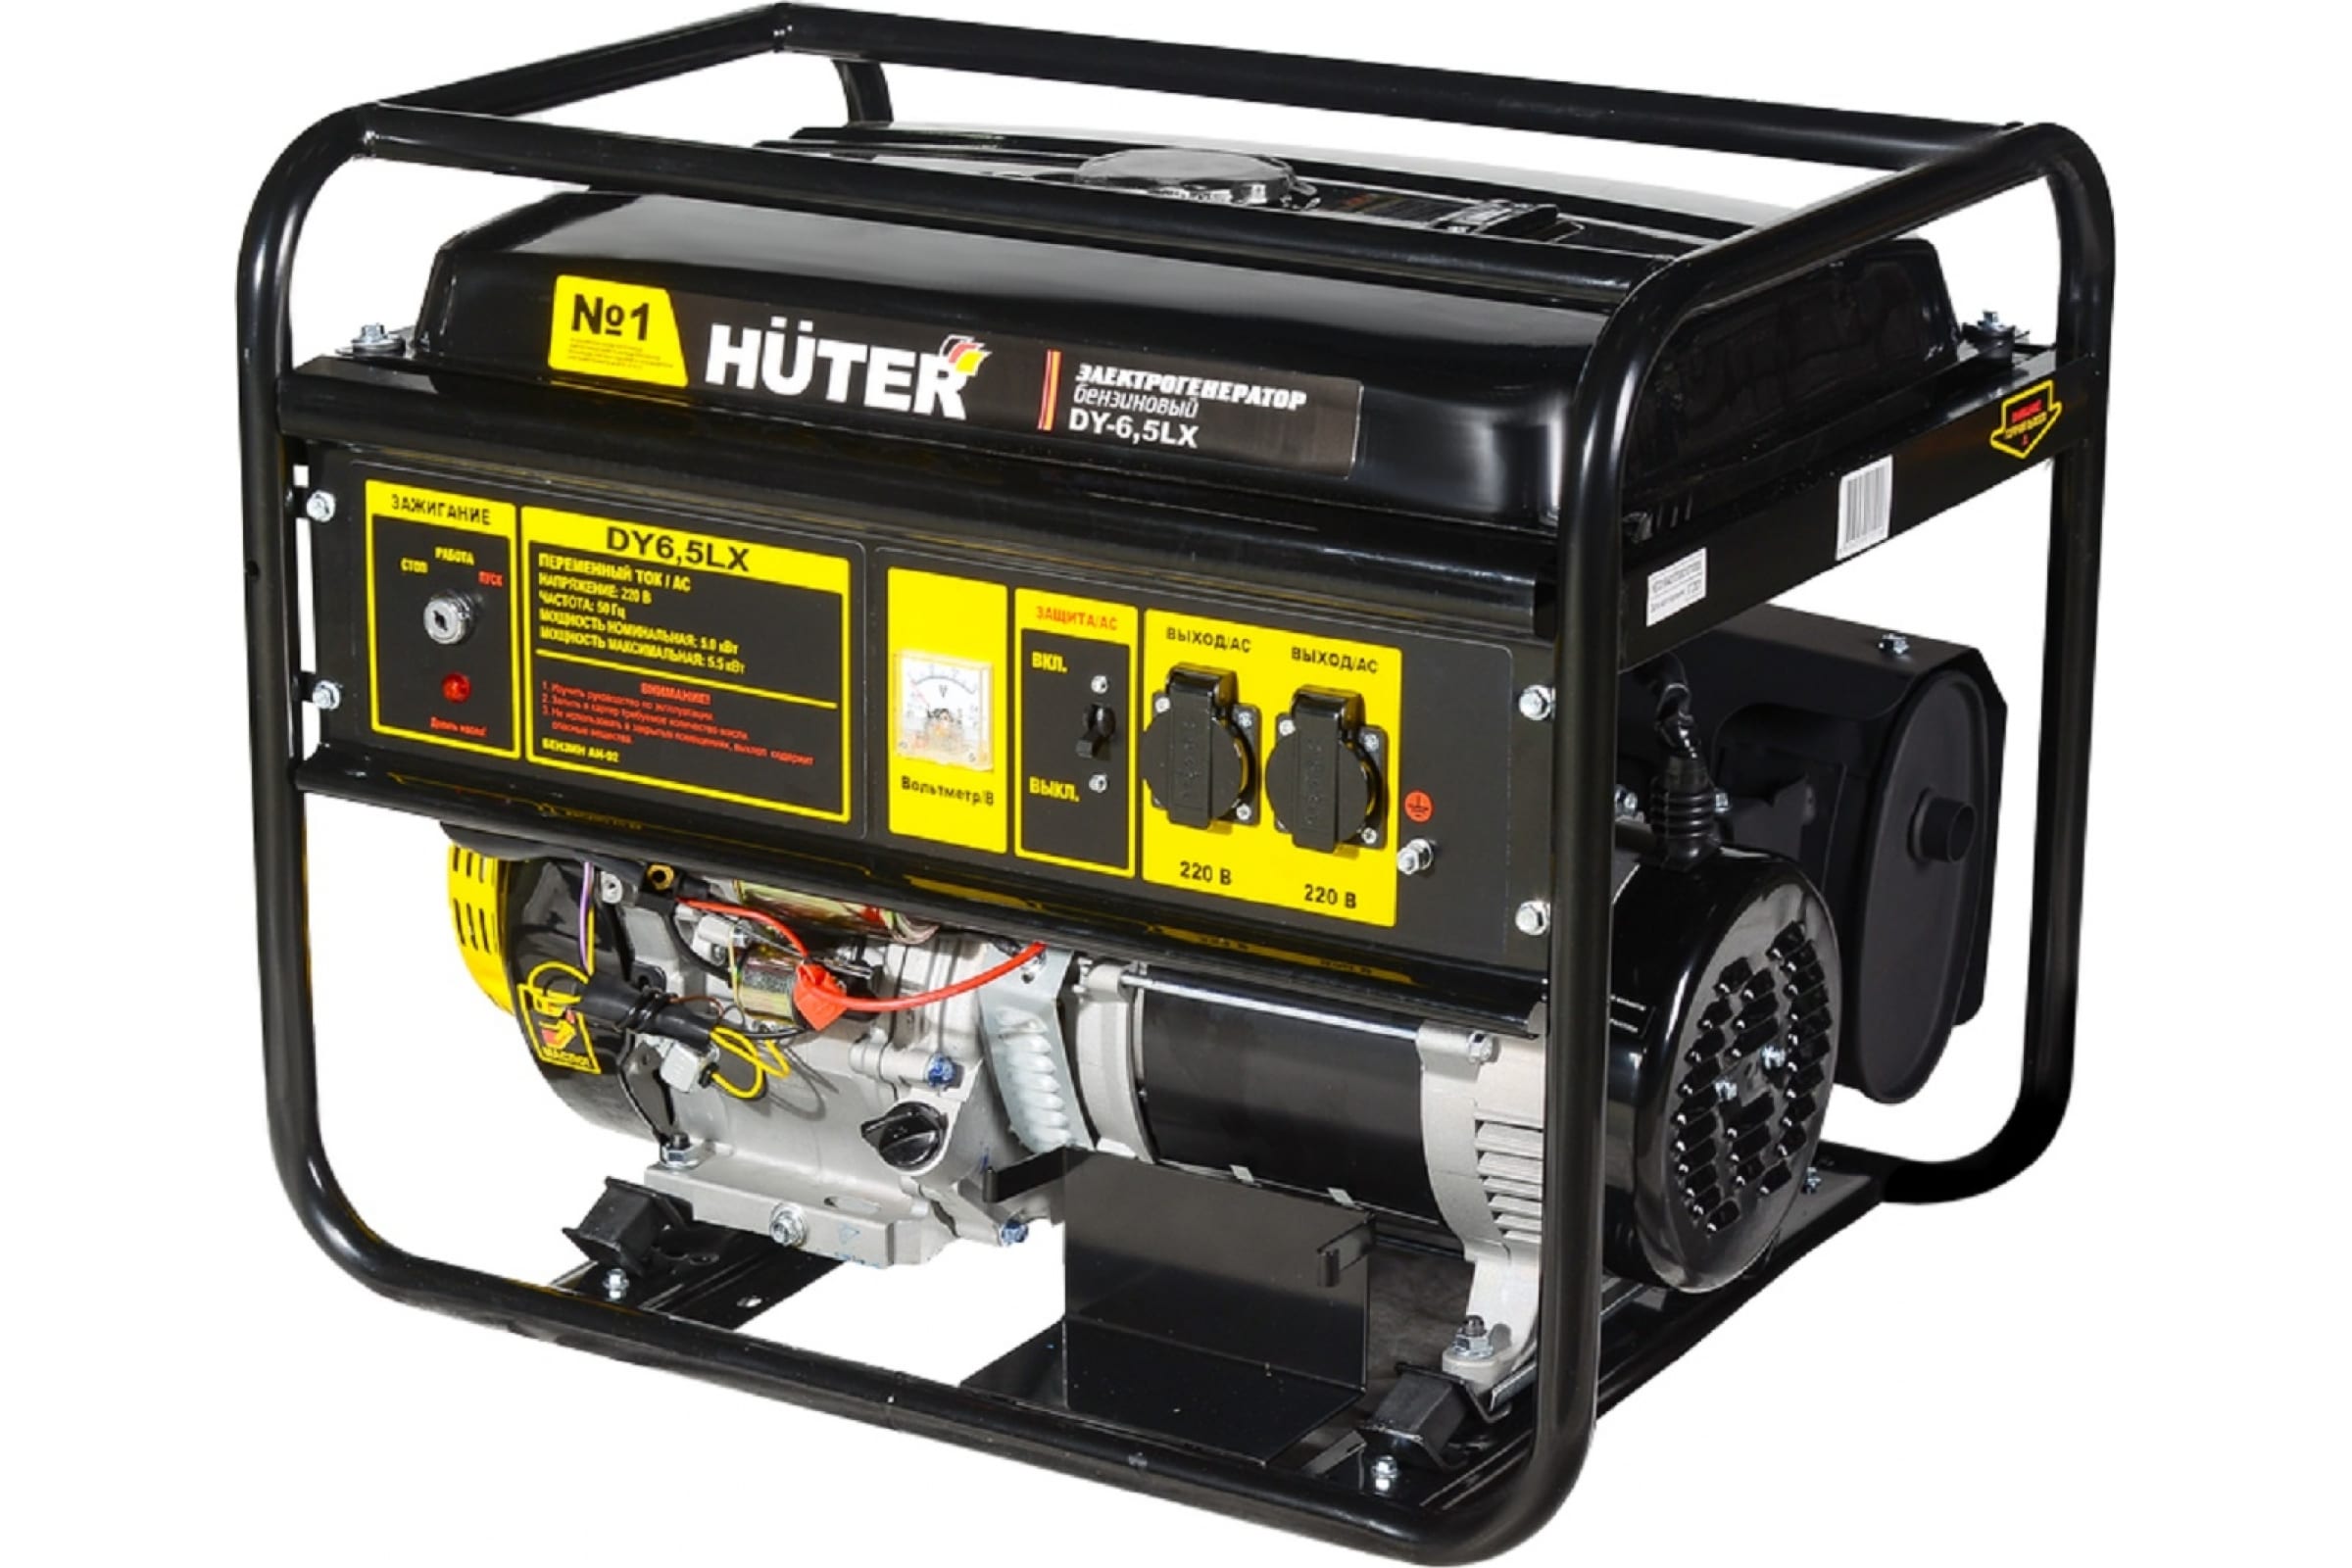 Генератор Huter DY6,5LX-электростартер электрогенератор бензиновый dy6500lx электростартер huter